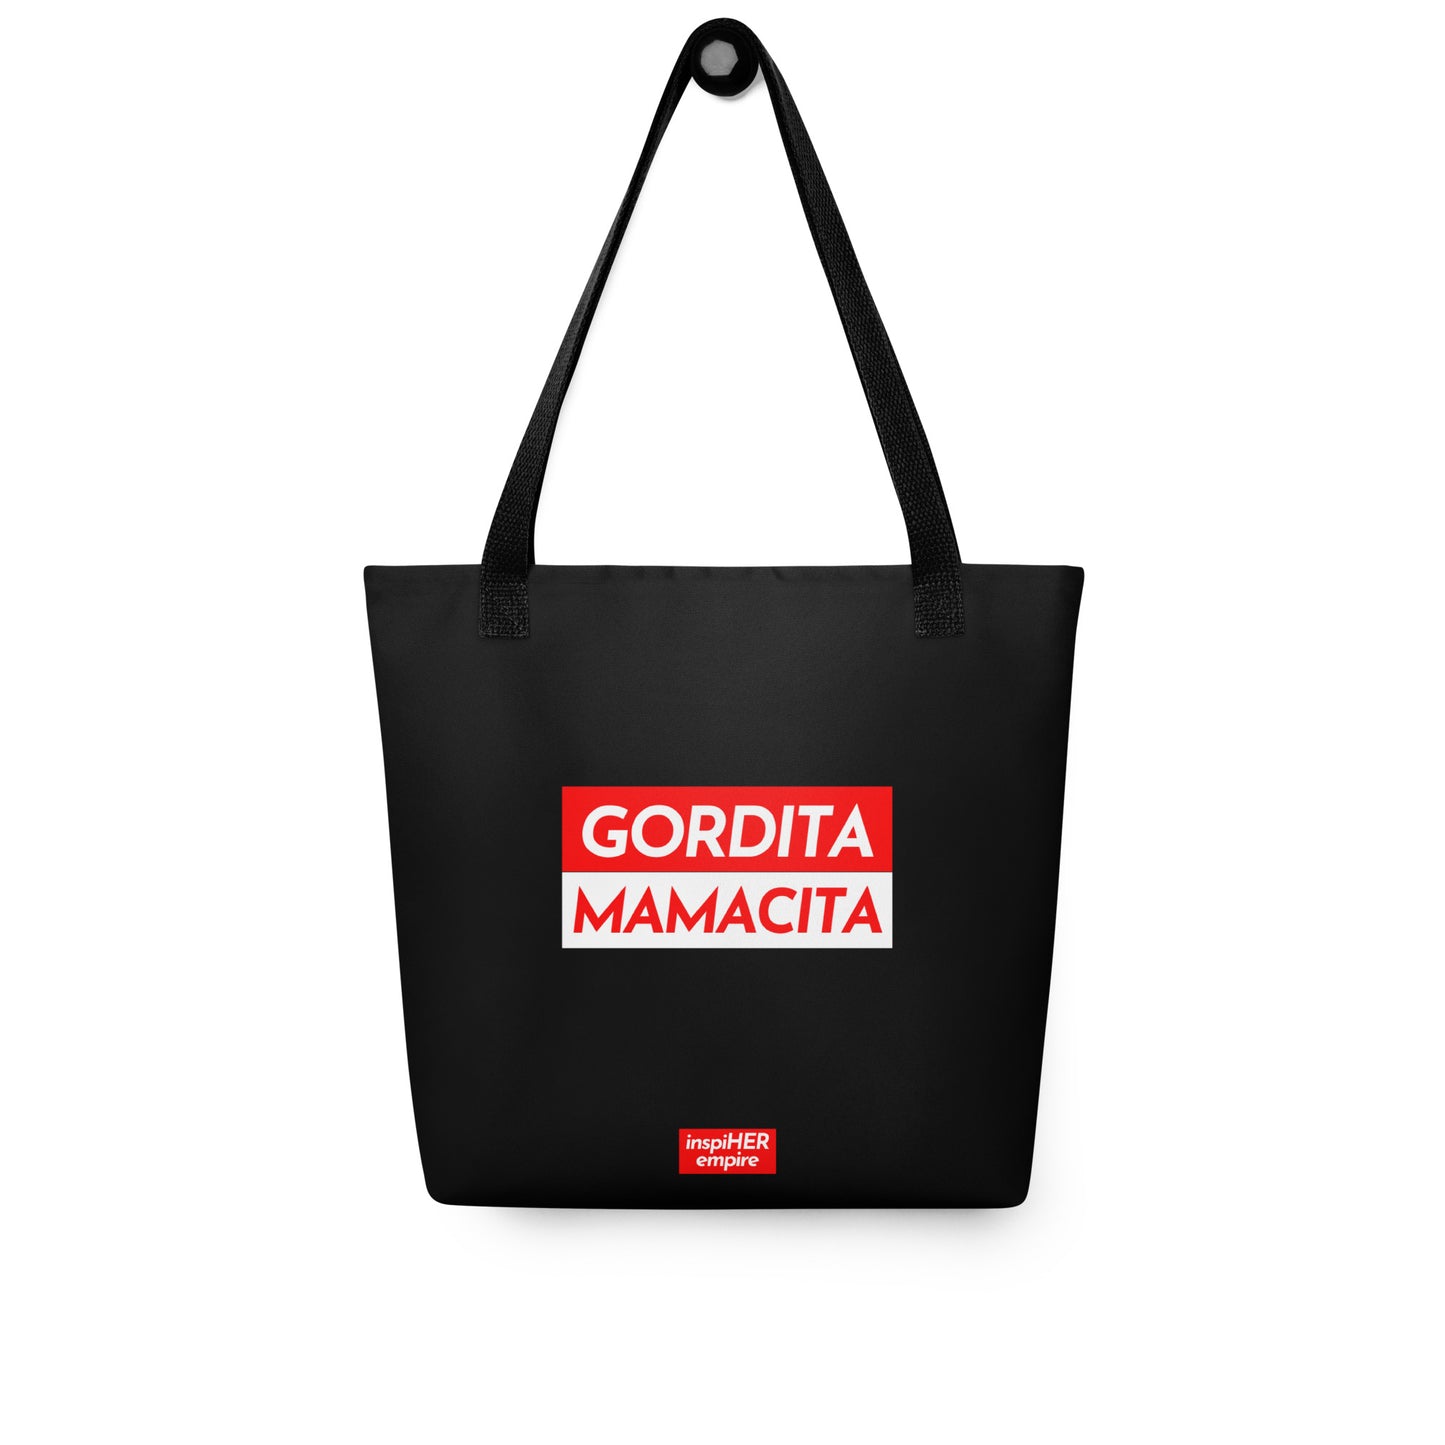 Gordita Mamacita Tote Bag